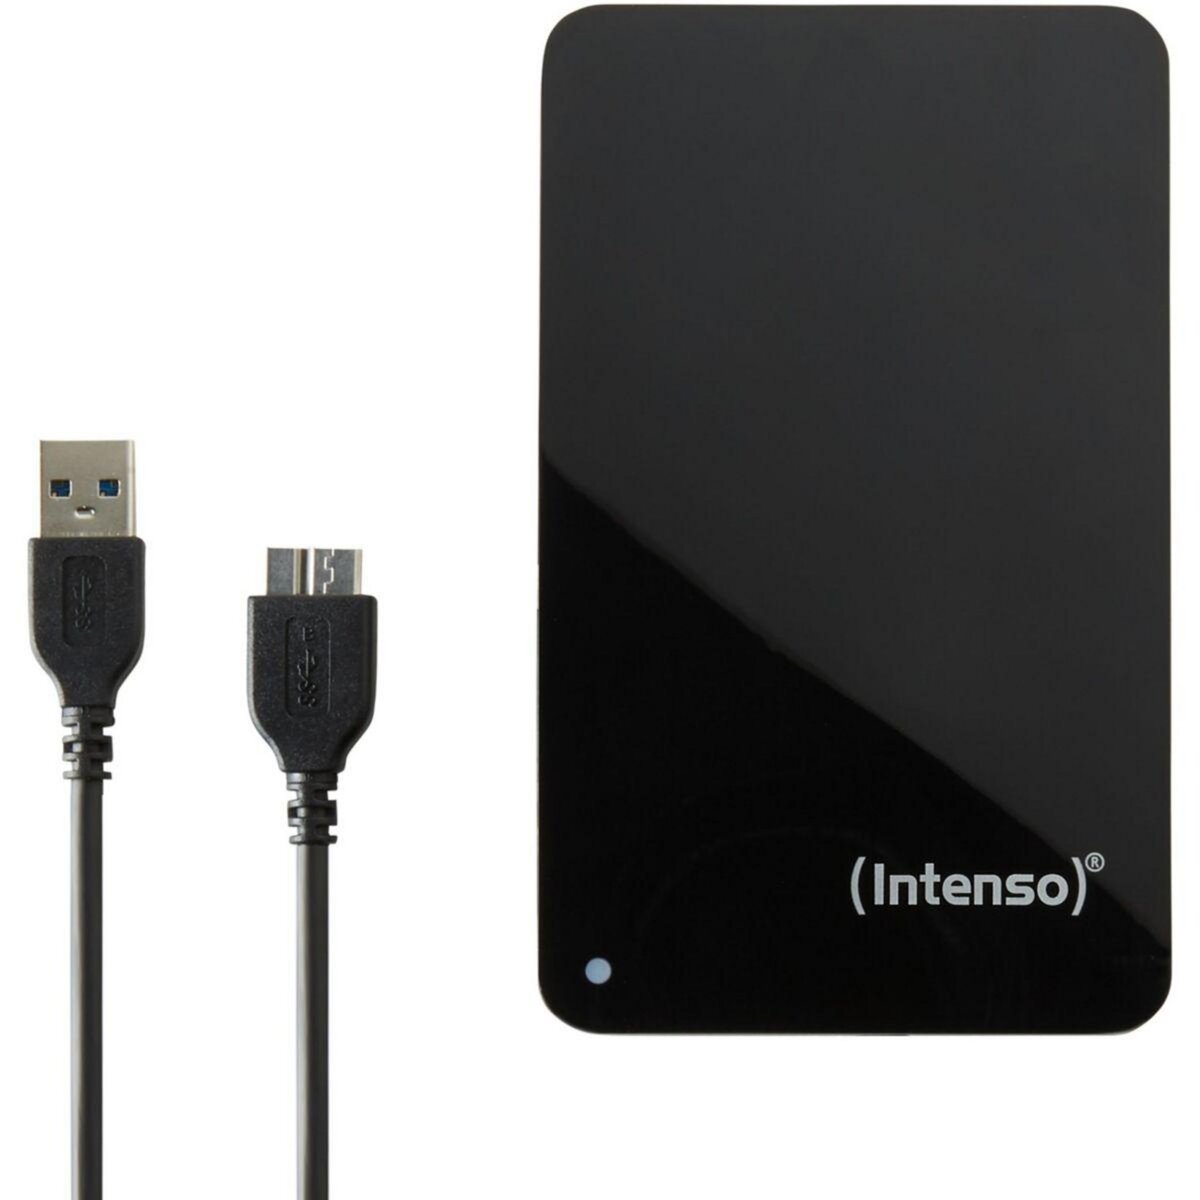 TX Disque dur externe reconditionné 1 TO USB 3.0 - Noir pas cher 